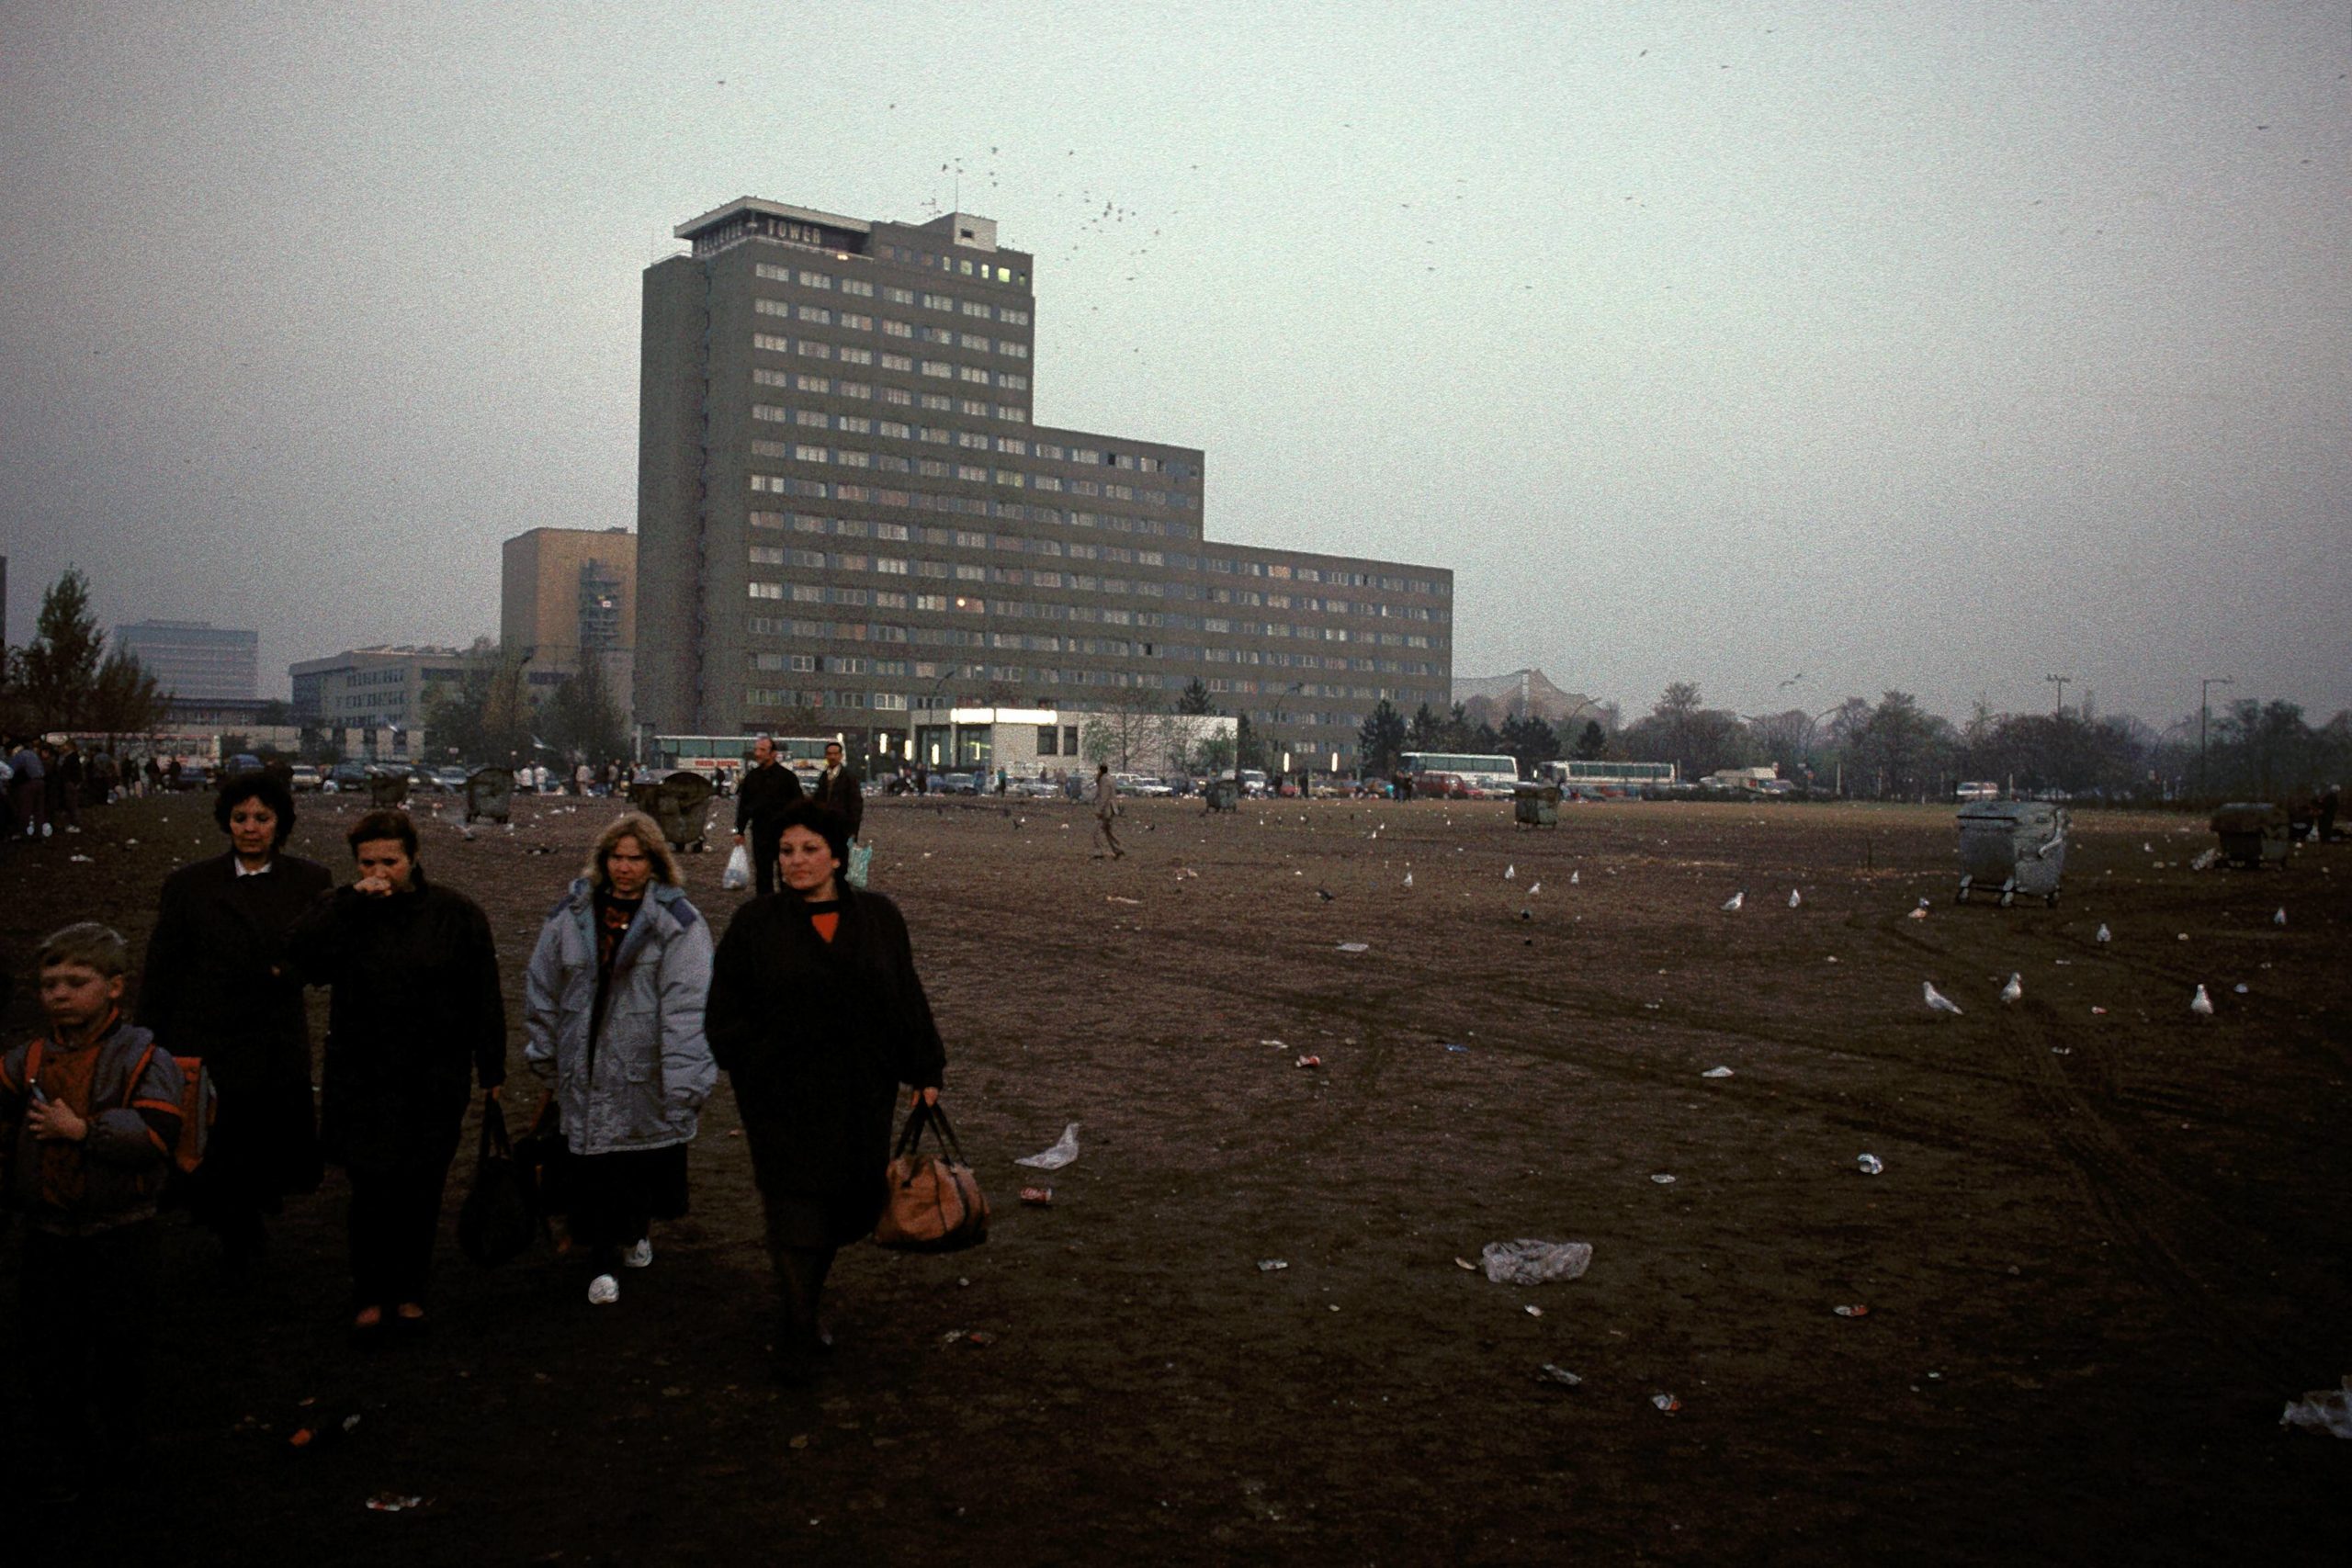 Brachen in Berlin: Der Potsdamer Platz, im Hintergrund das Tower Hotel, 1990. Foto: Imago/Camera4